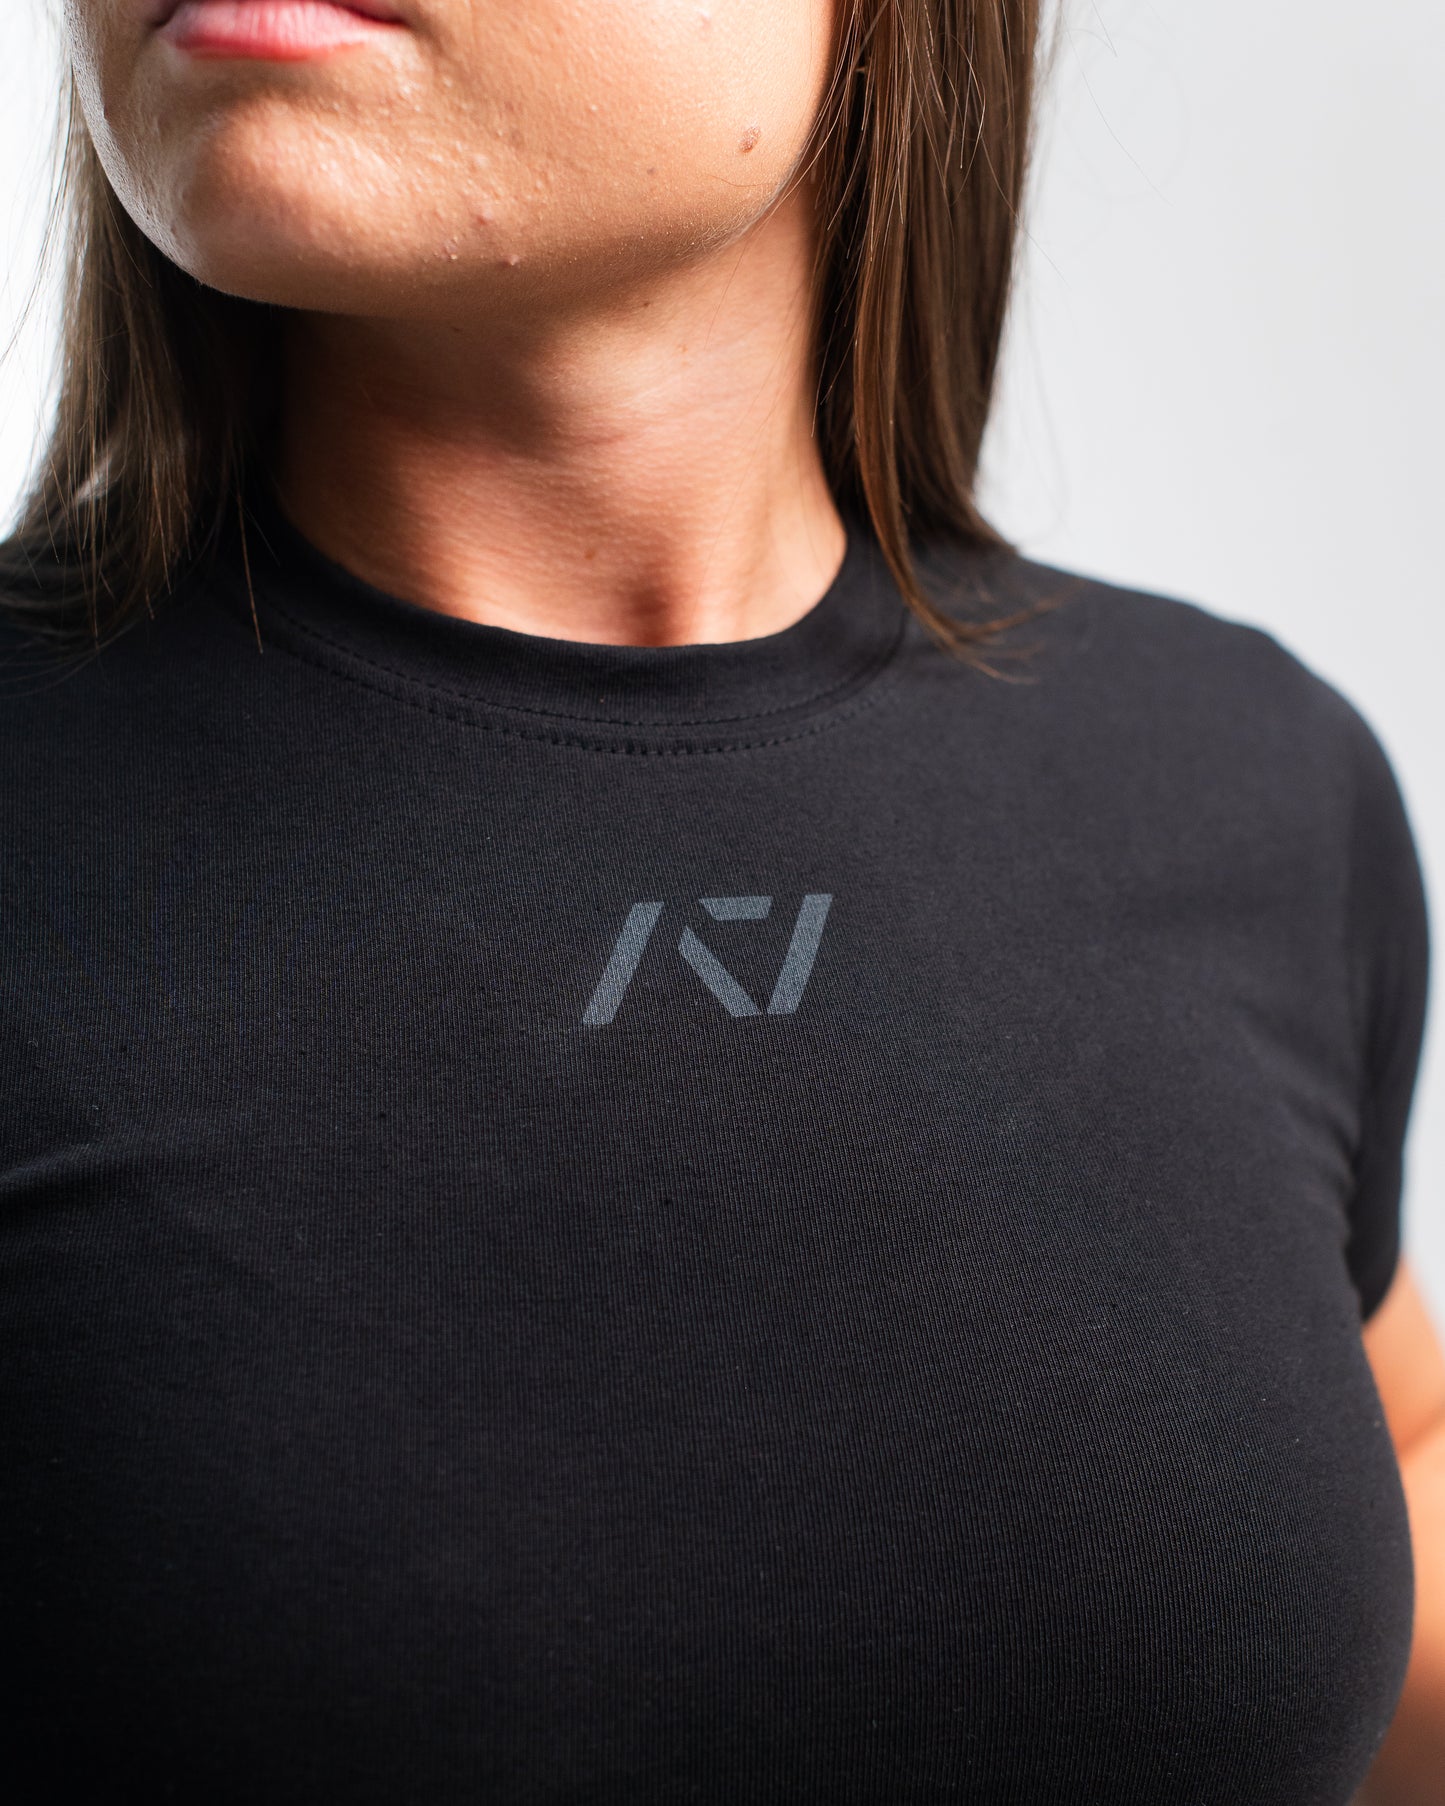 
                  
                    A7 Logo Stealth Women's Meet Shirt
                  
                